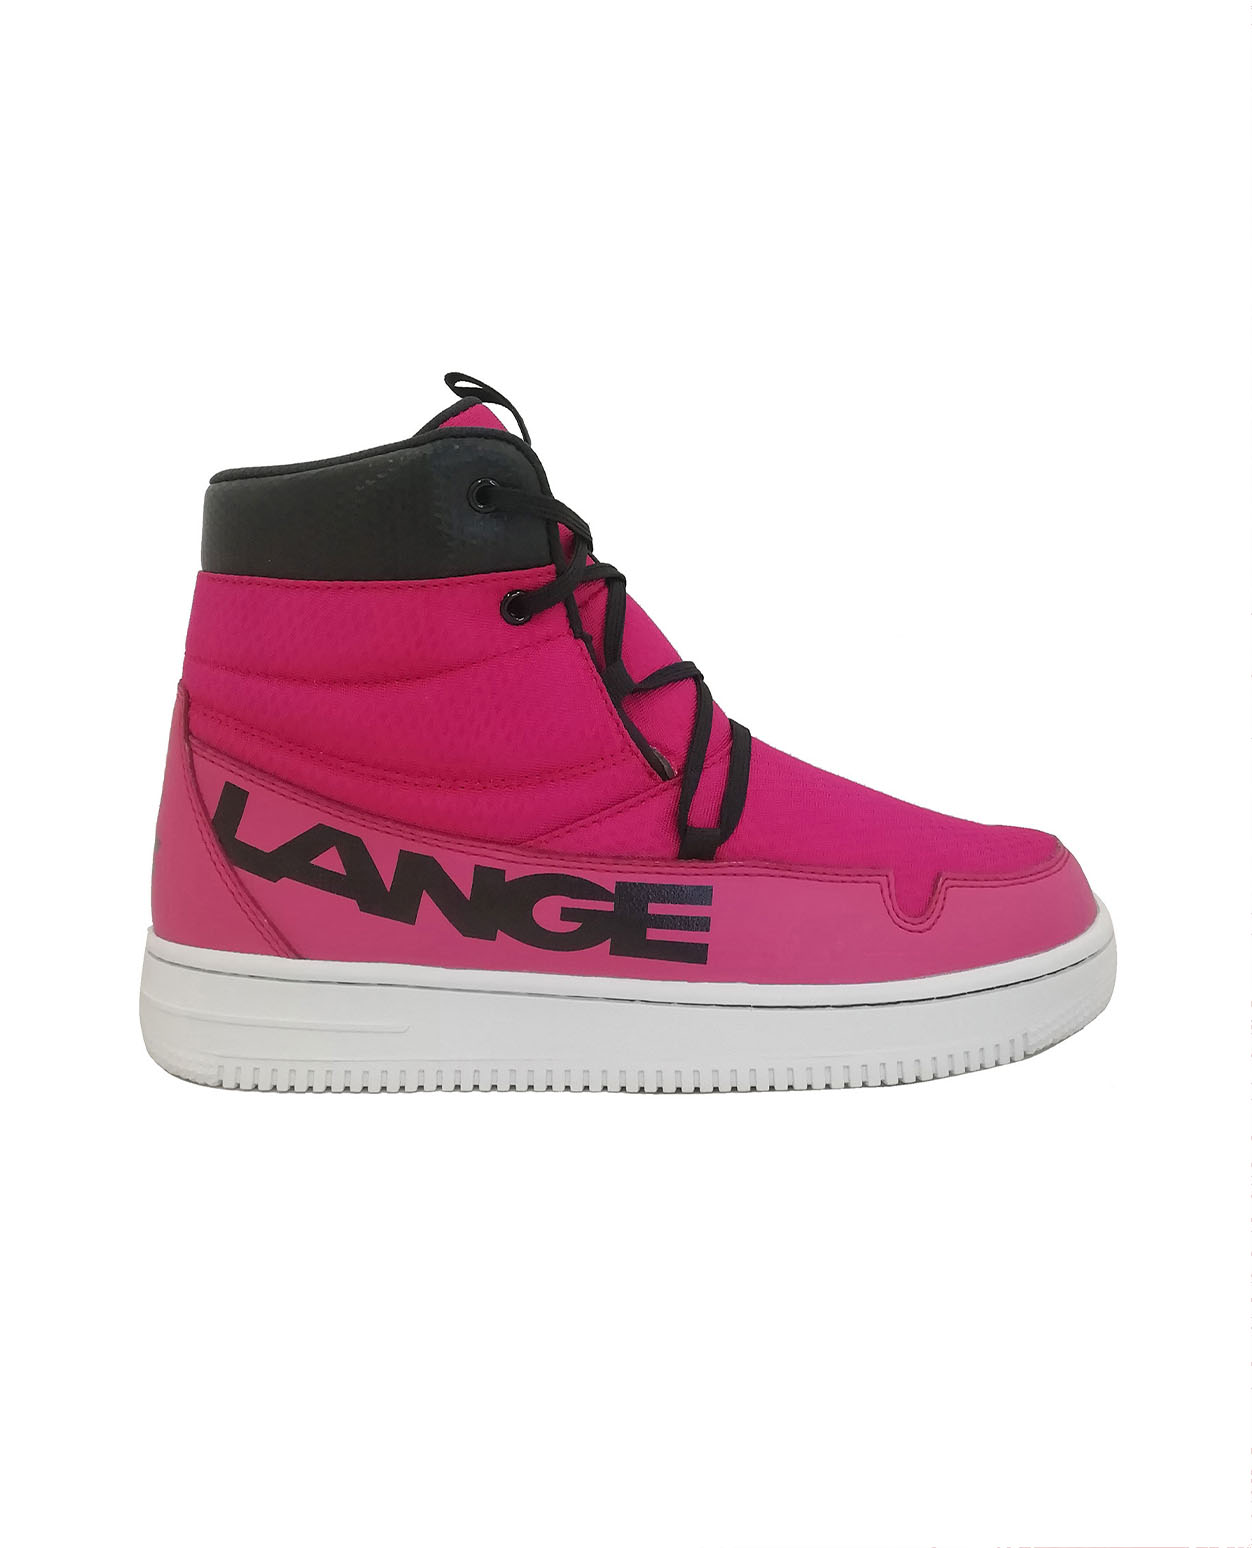 Lange Podium Soft Shoe Pink